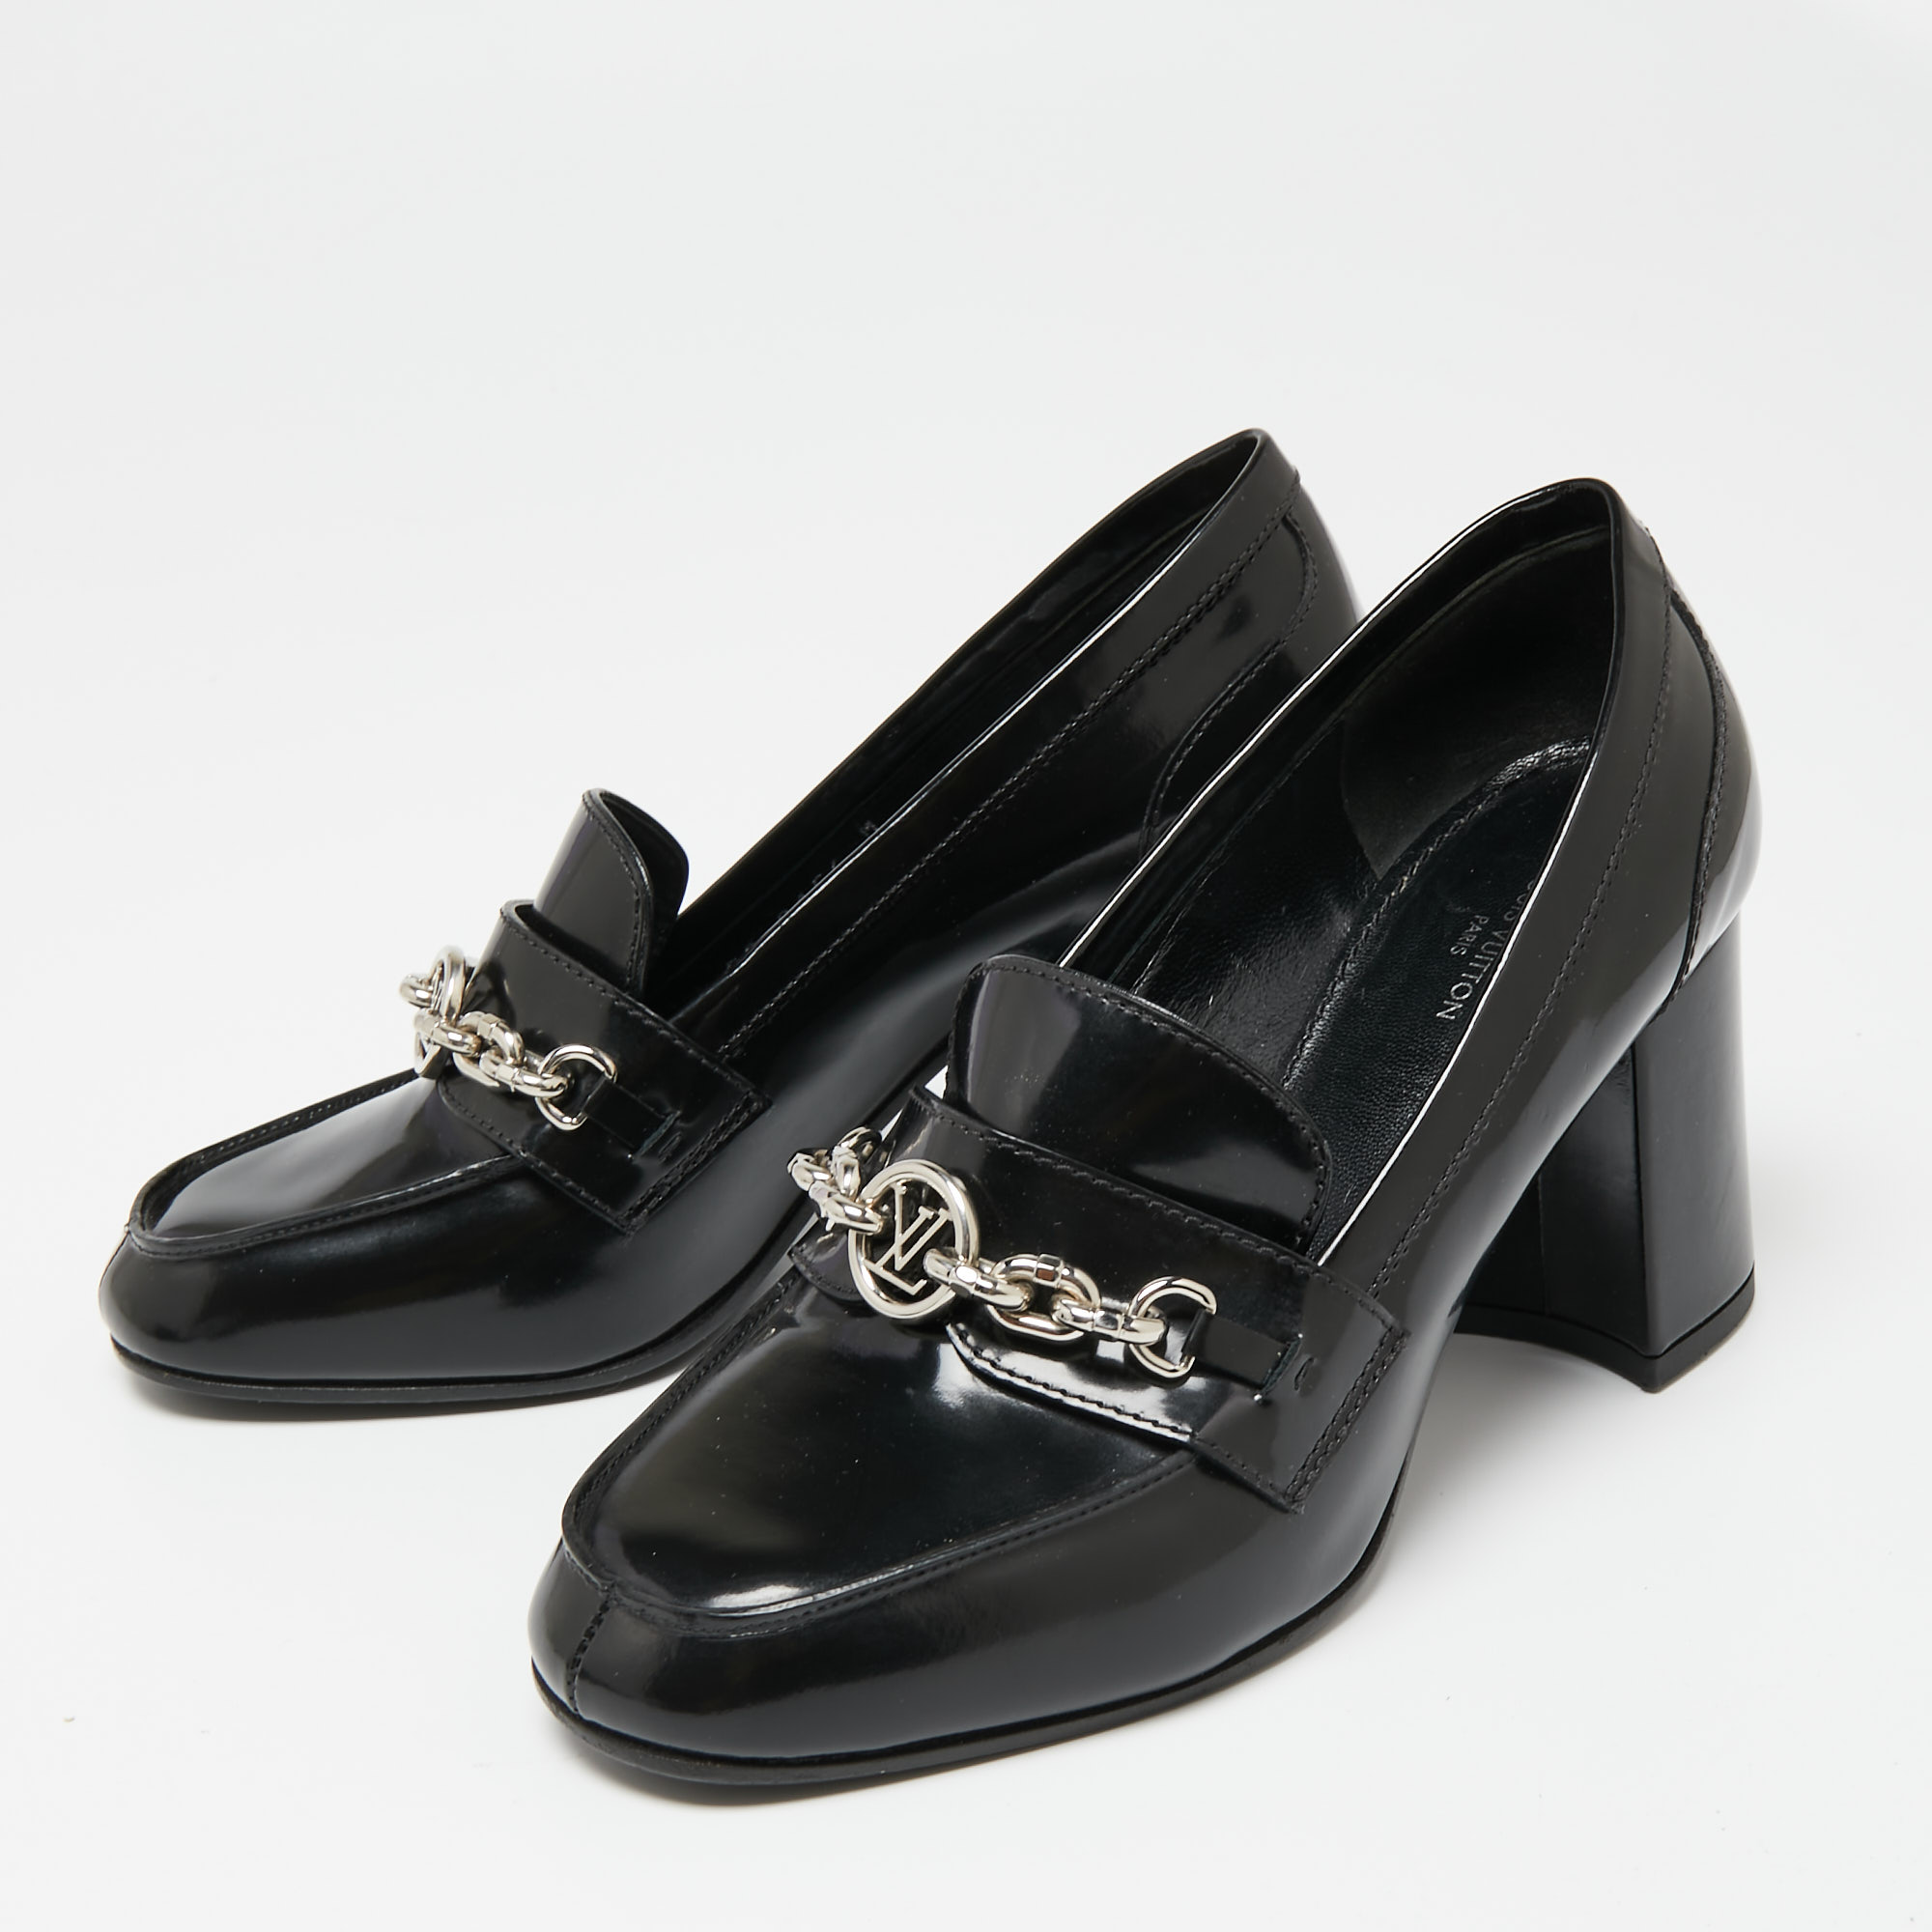 

Louis Vuitton Black Patent Leather Schoolgirl Loafer Pumps Size